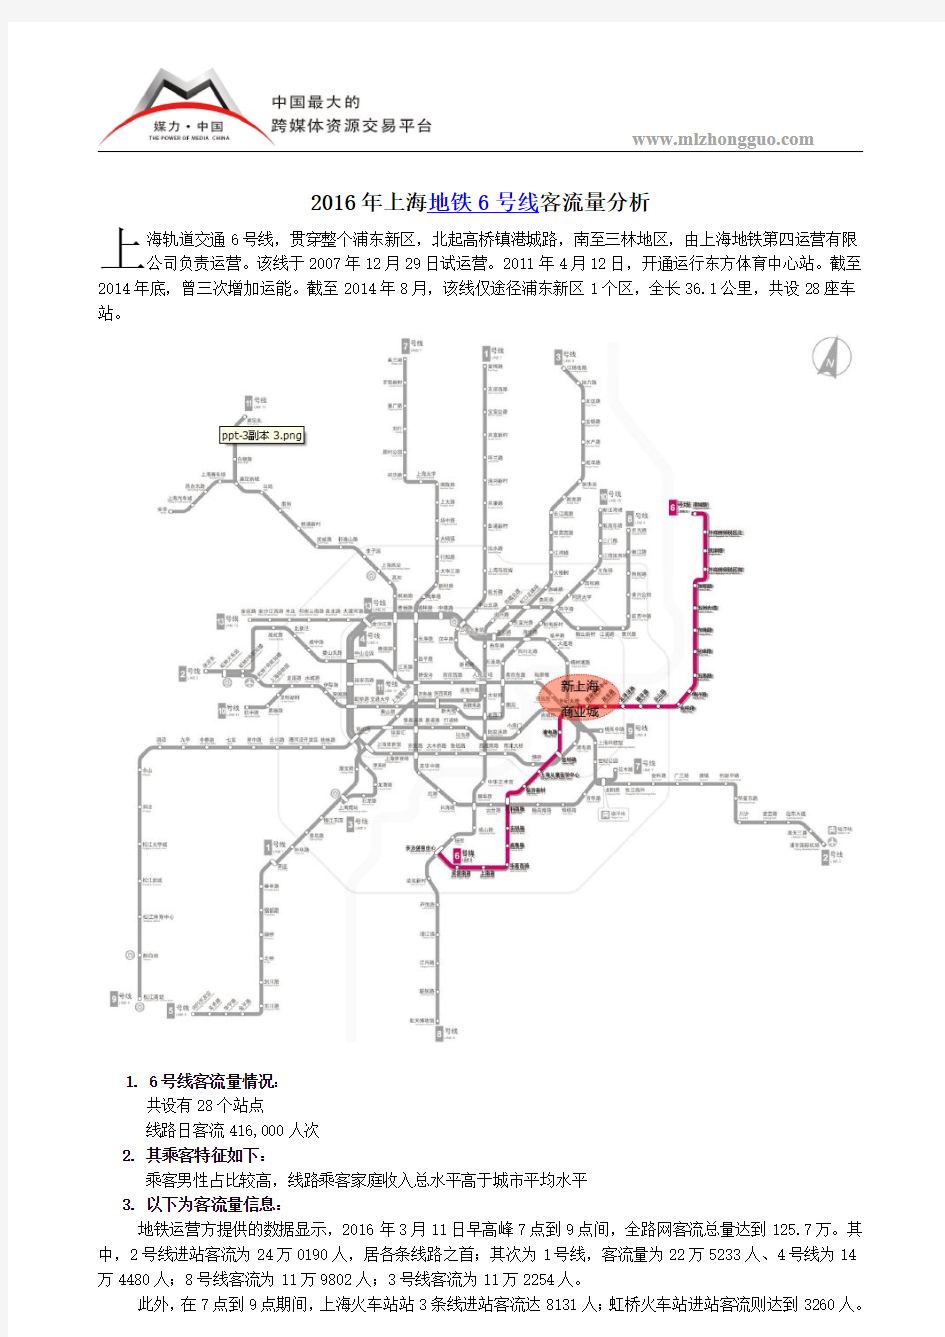 2016年上海地铁6号线客流量分析